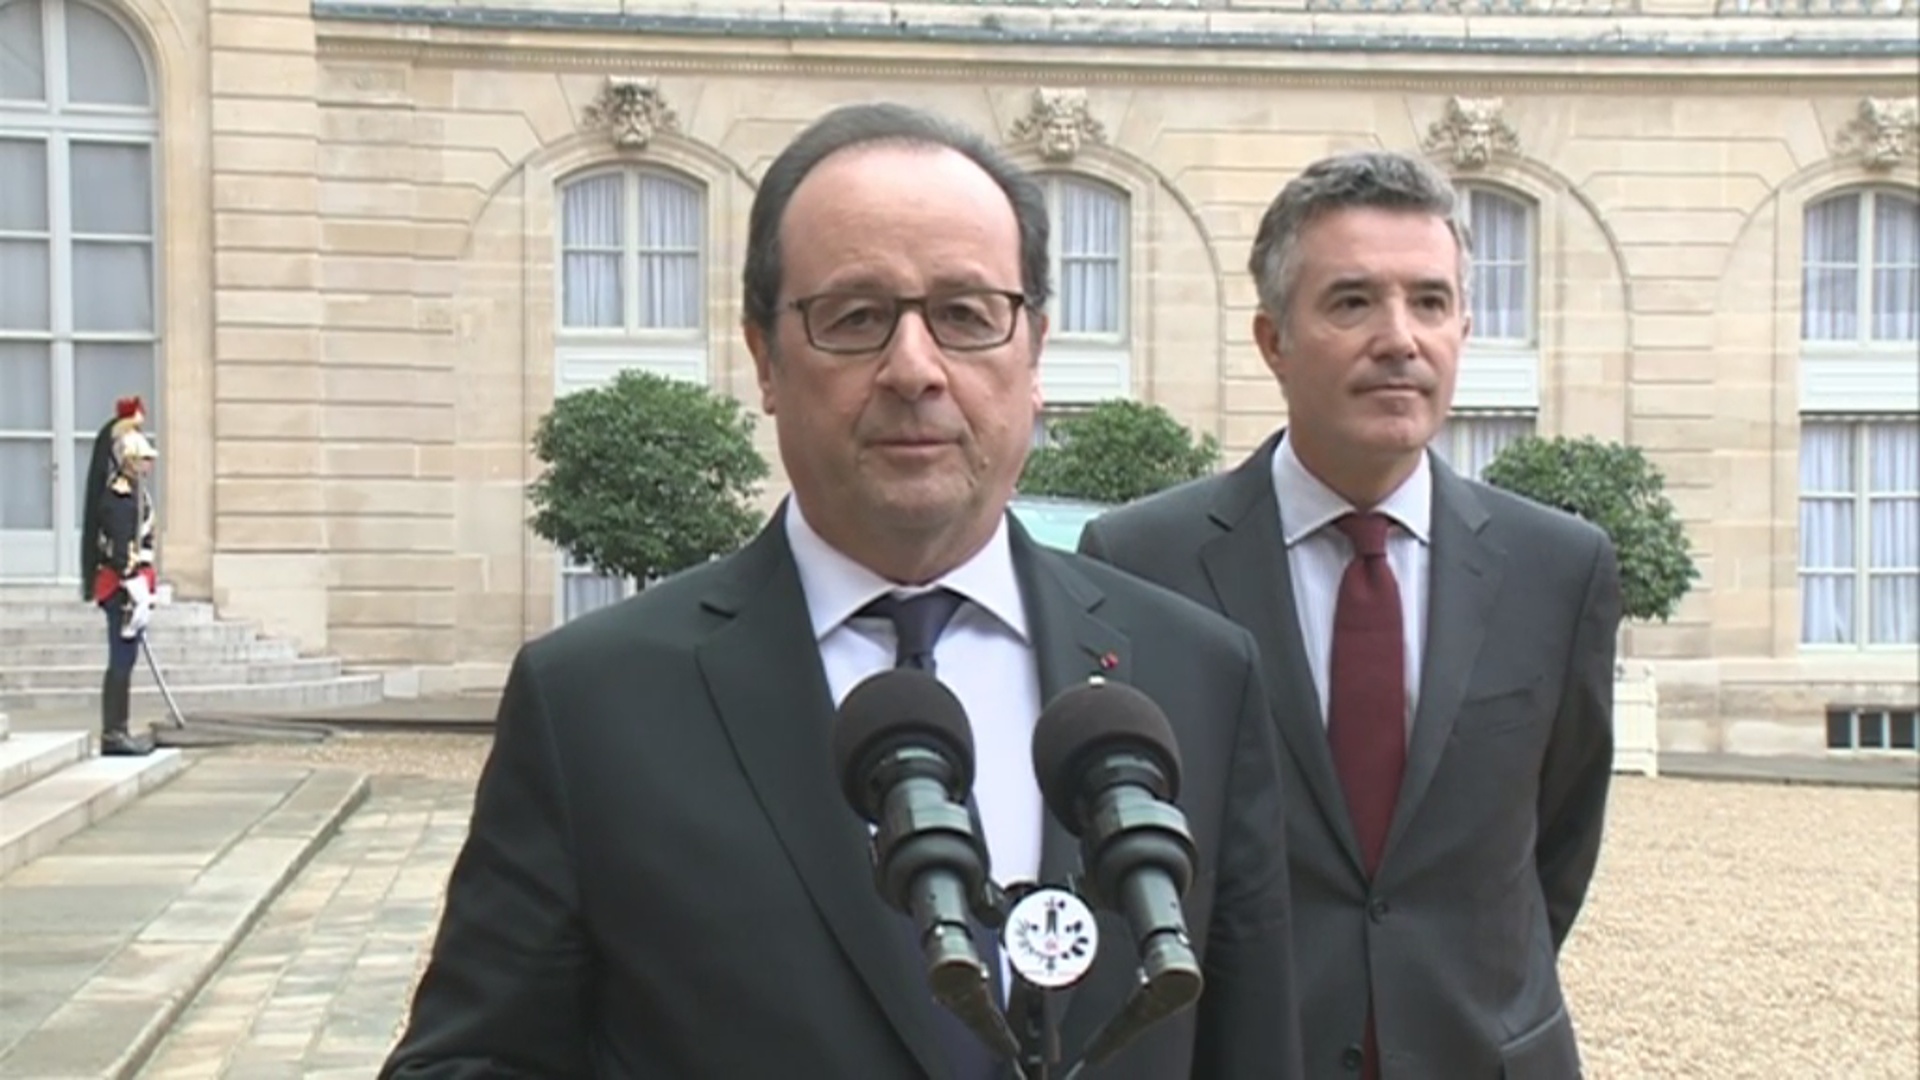 La declaració completa d'Hollande: Aposta per un acord d'associació que respecti certes especificitats